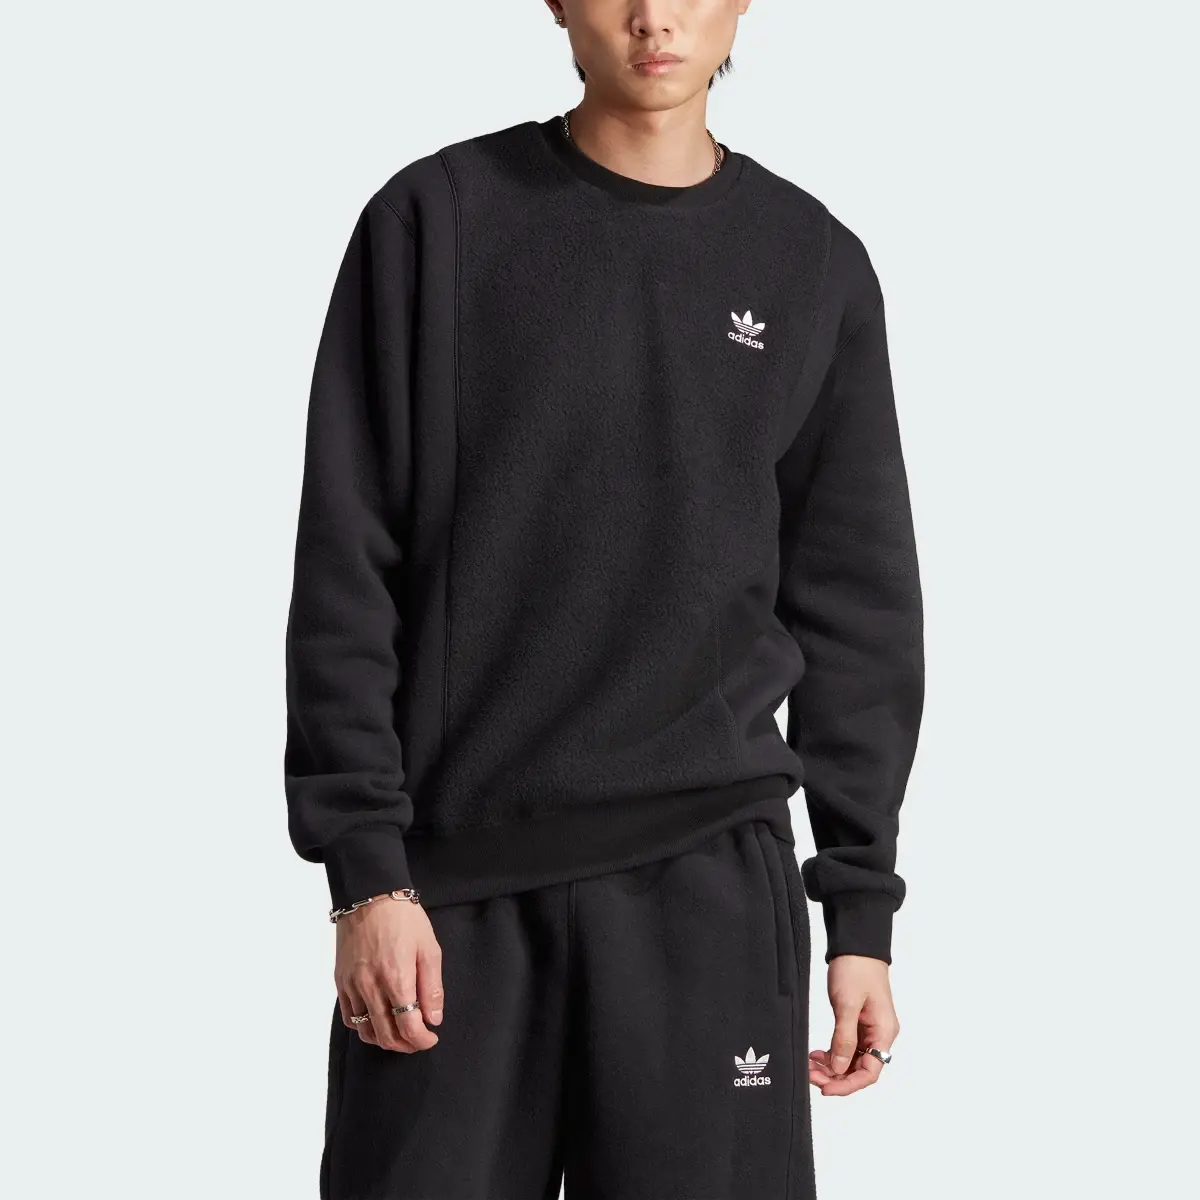 Adidas Essentials+ Trefoil Reverse Material Crew Sweatshirt. 1